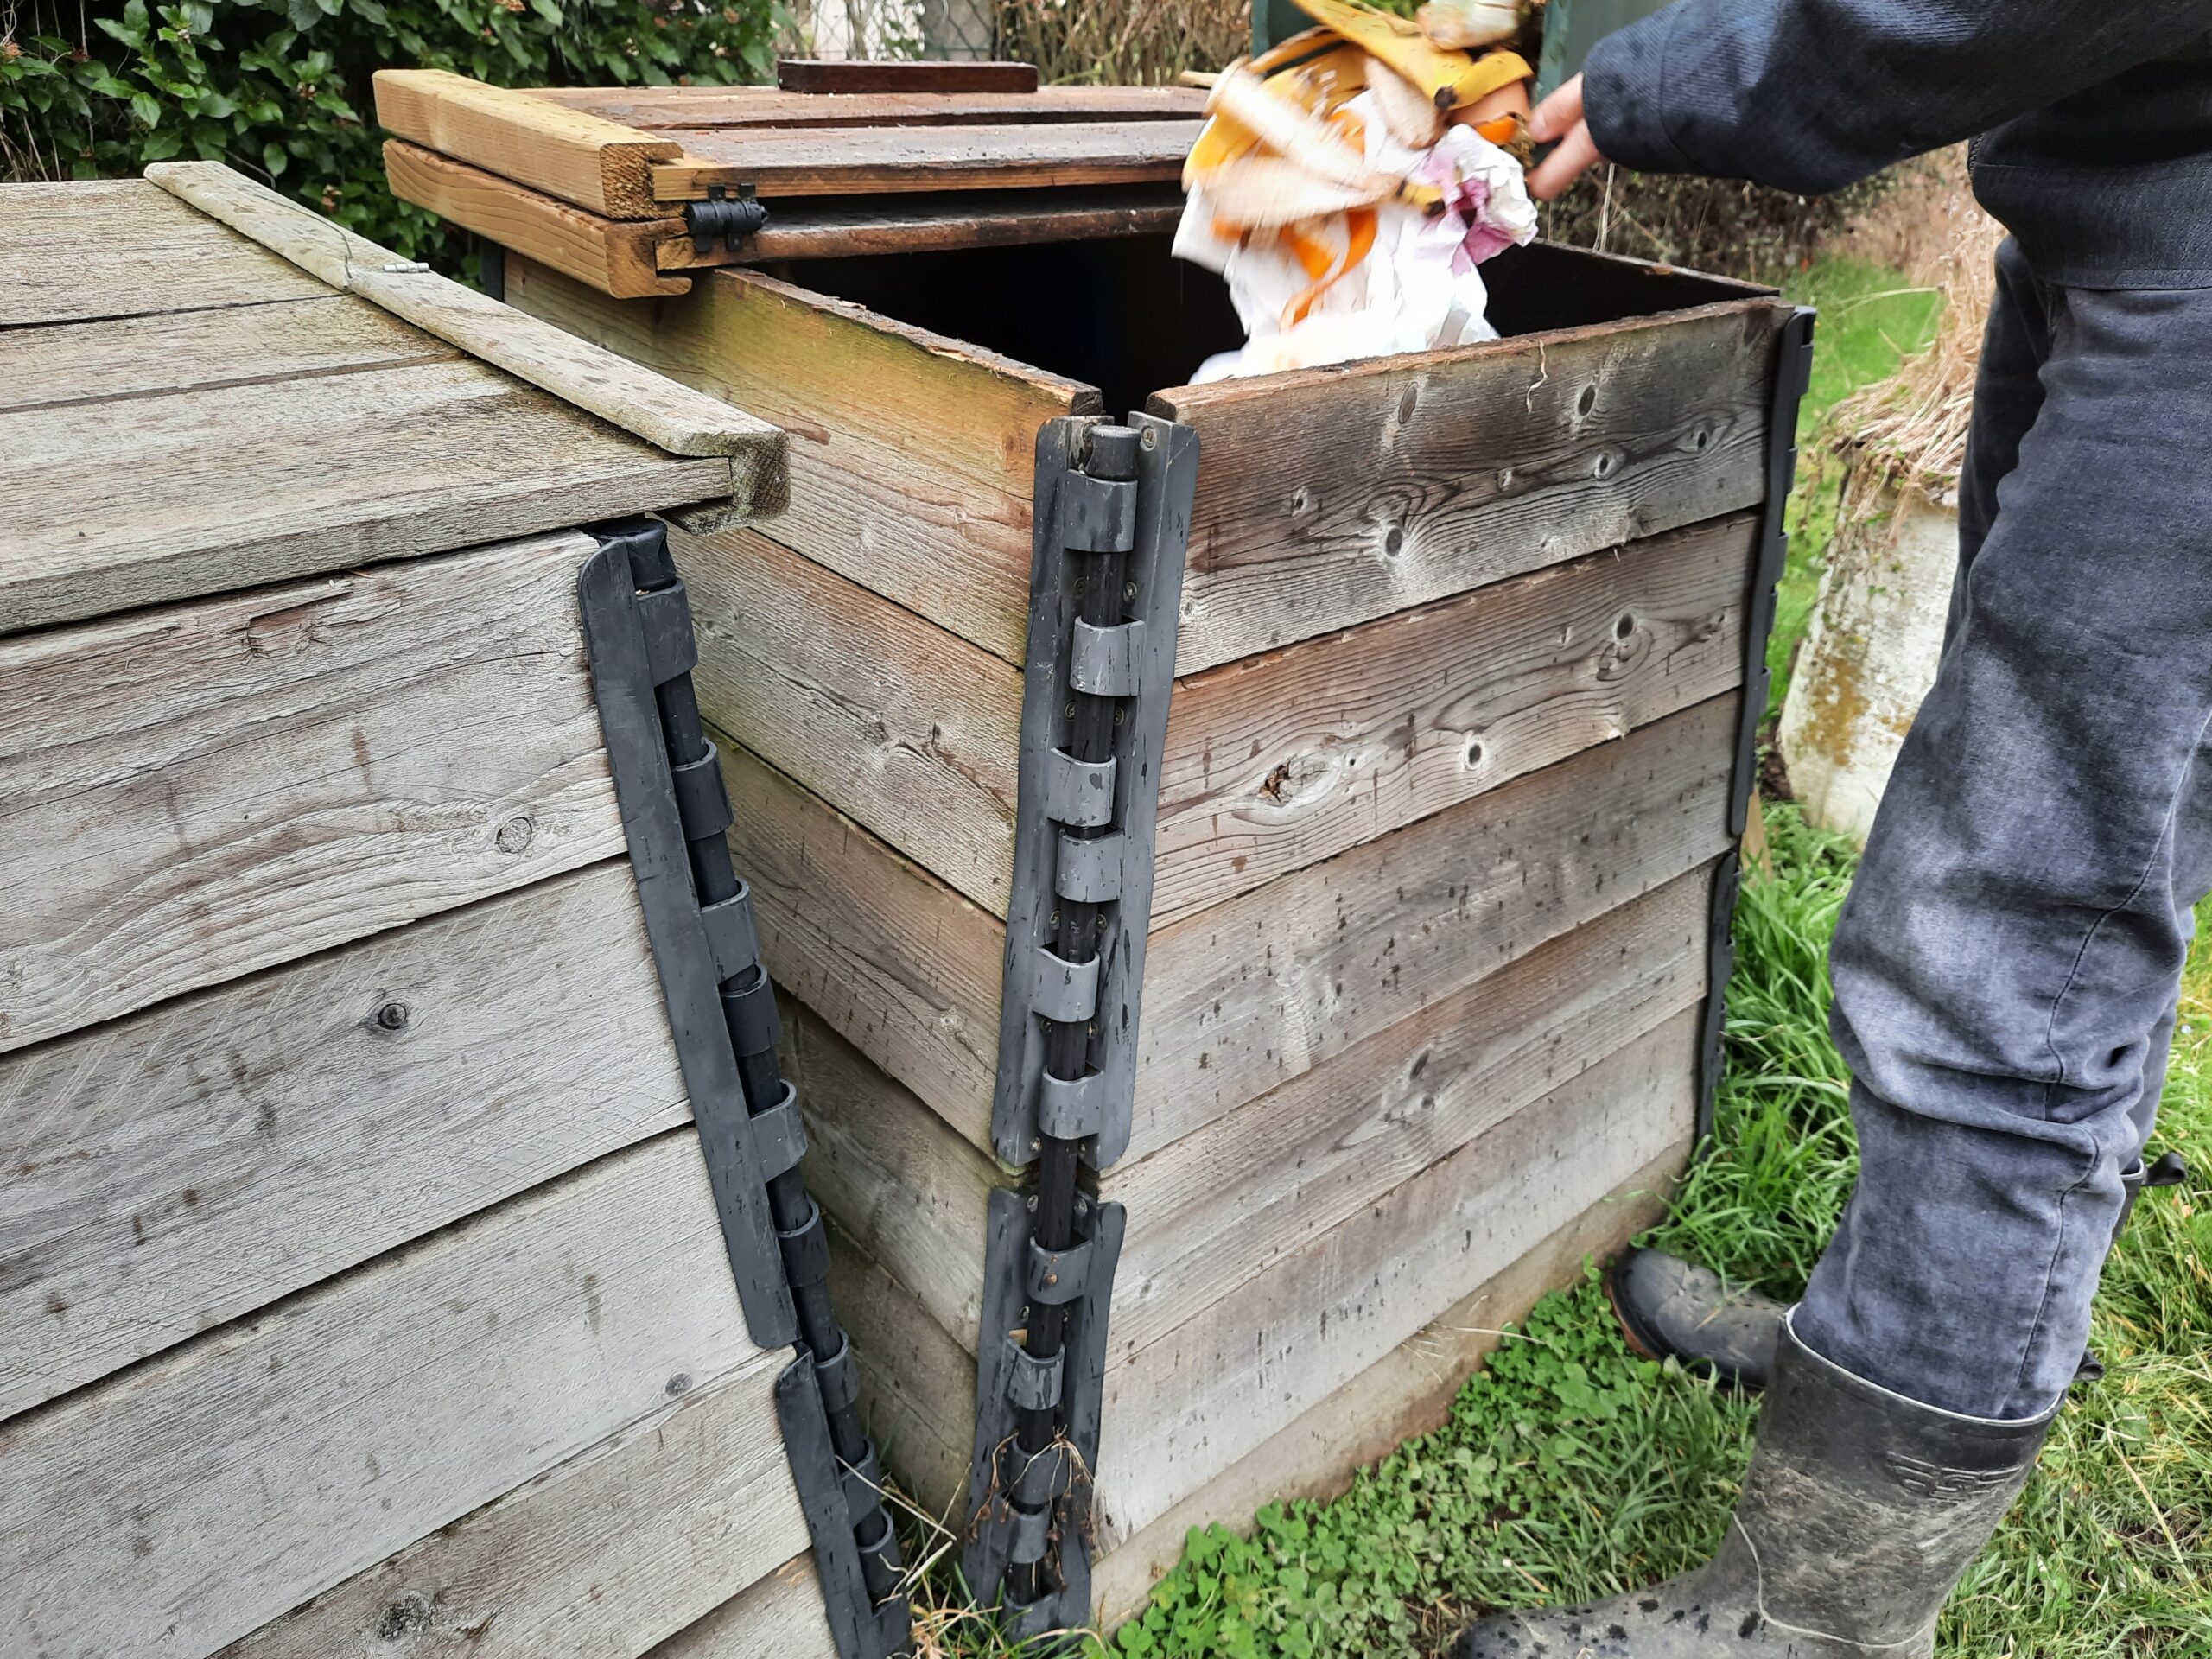 Bac à compost avec couvercle SOLID